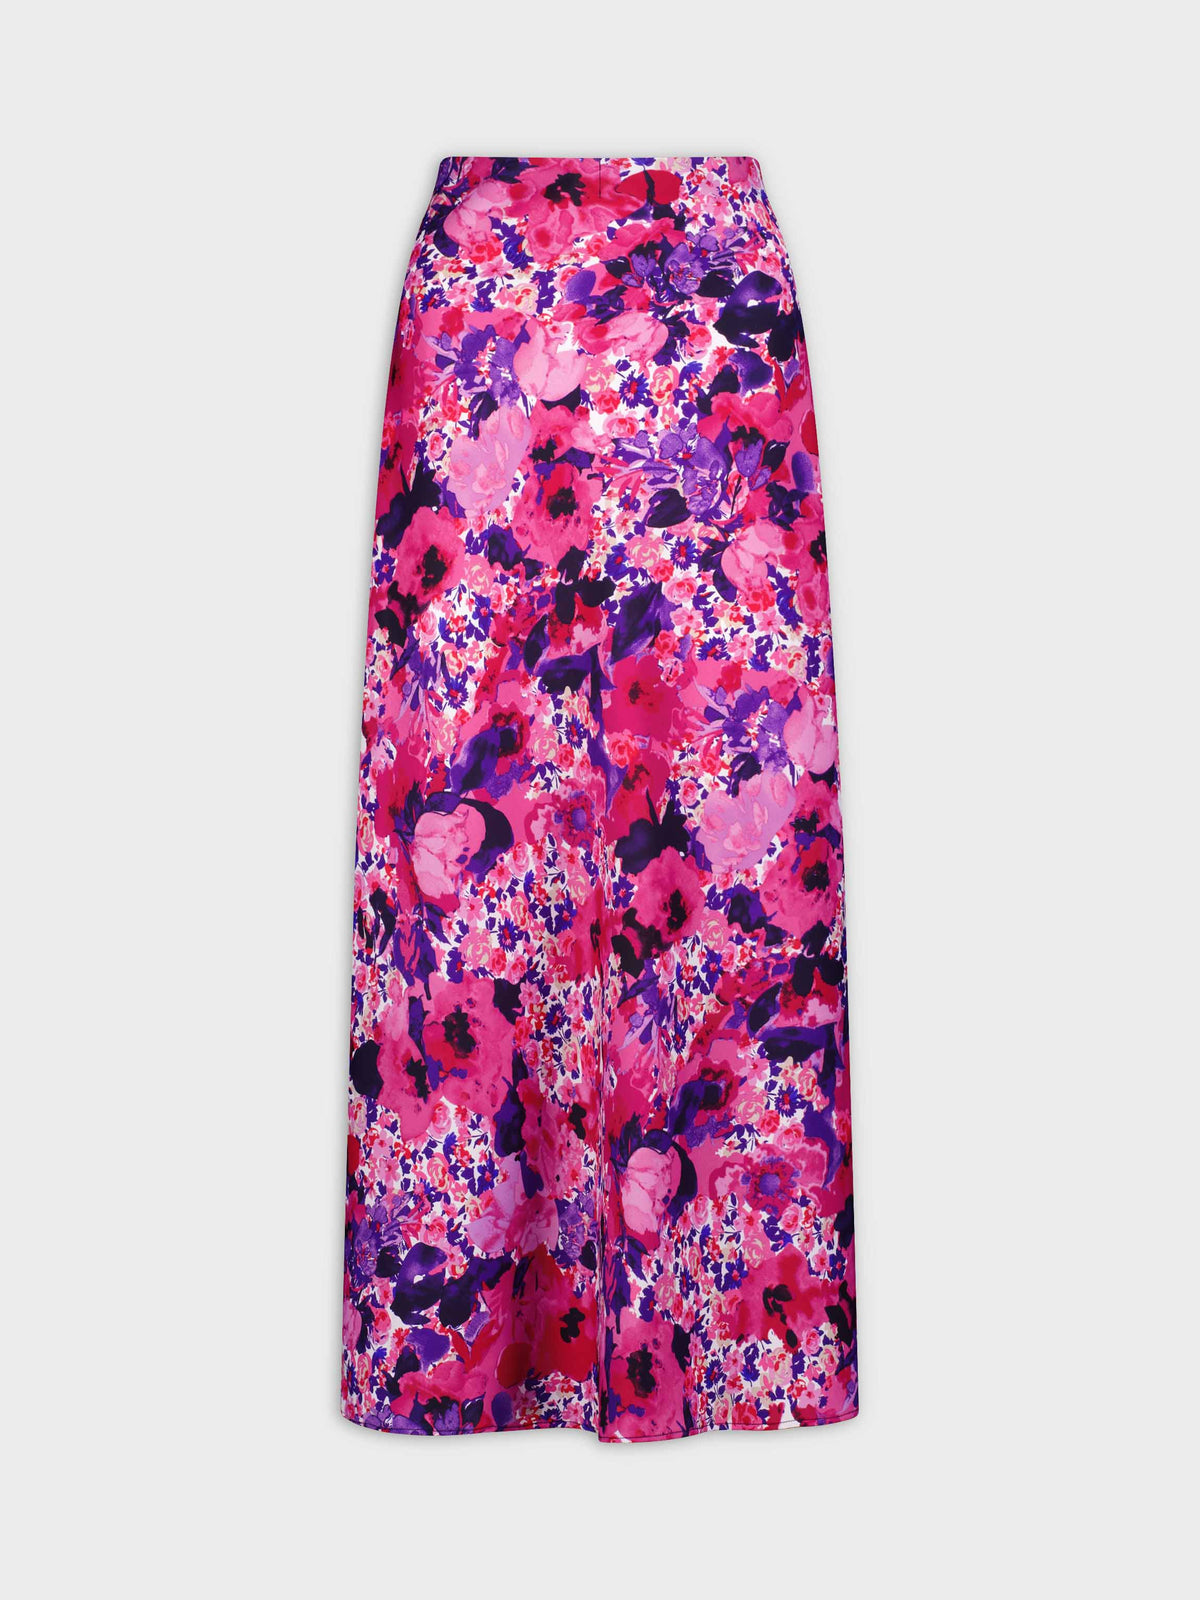 Falda lencero de satén-Floral rosa/púrpura